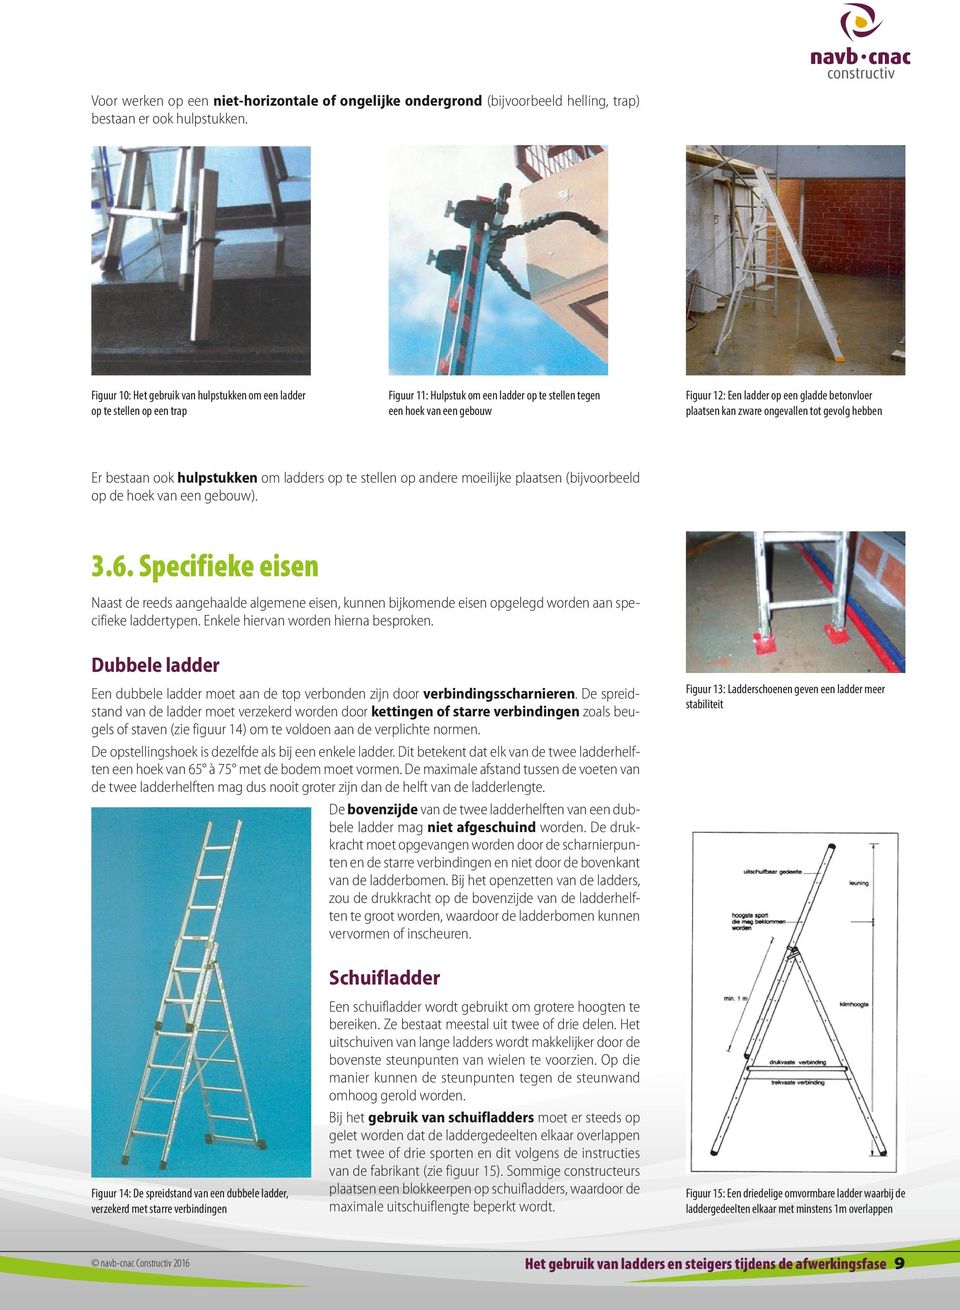 betonvloer plaatsen kan zware ongevallen tot gevolg hebben Er bestaan ook hulpstukken om ladders op te stellen op andere moeilijke plaatsen (bijvoorbeeld op de hoek van een gebouw). 3.6.